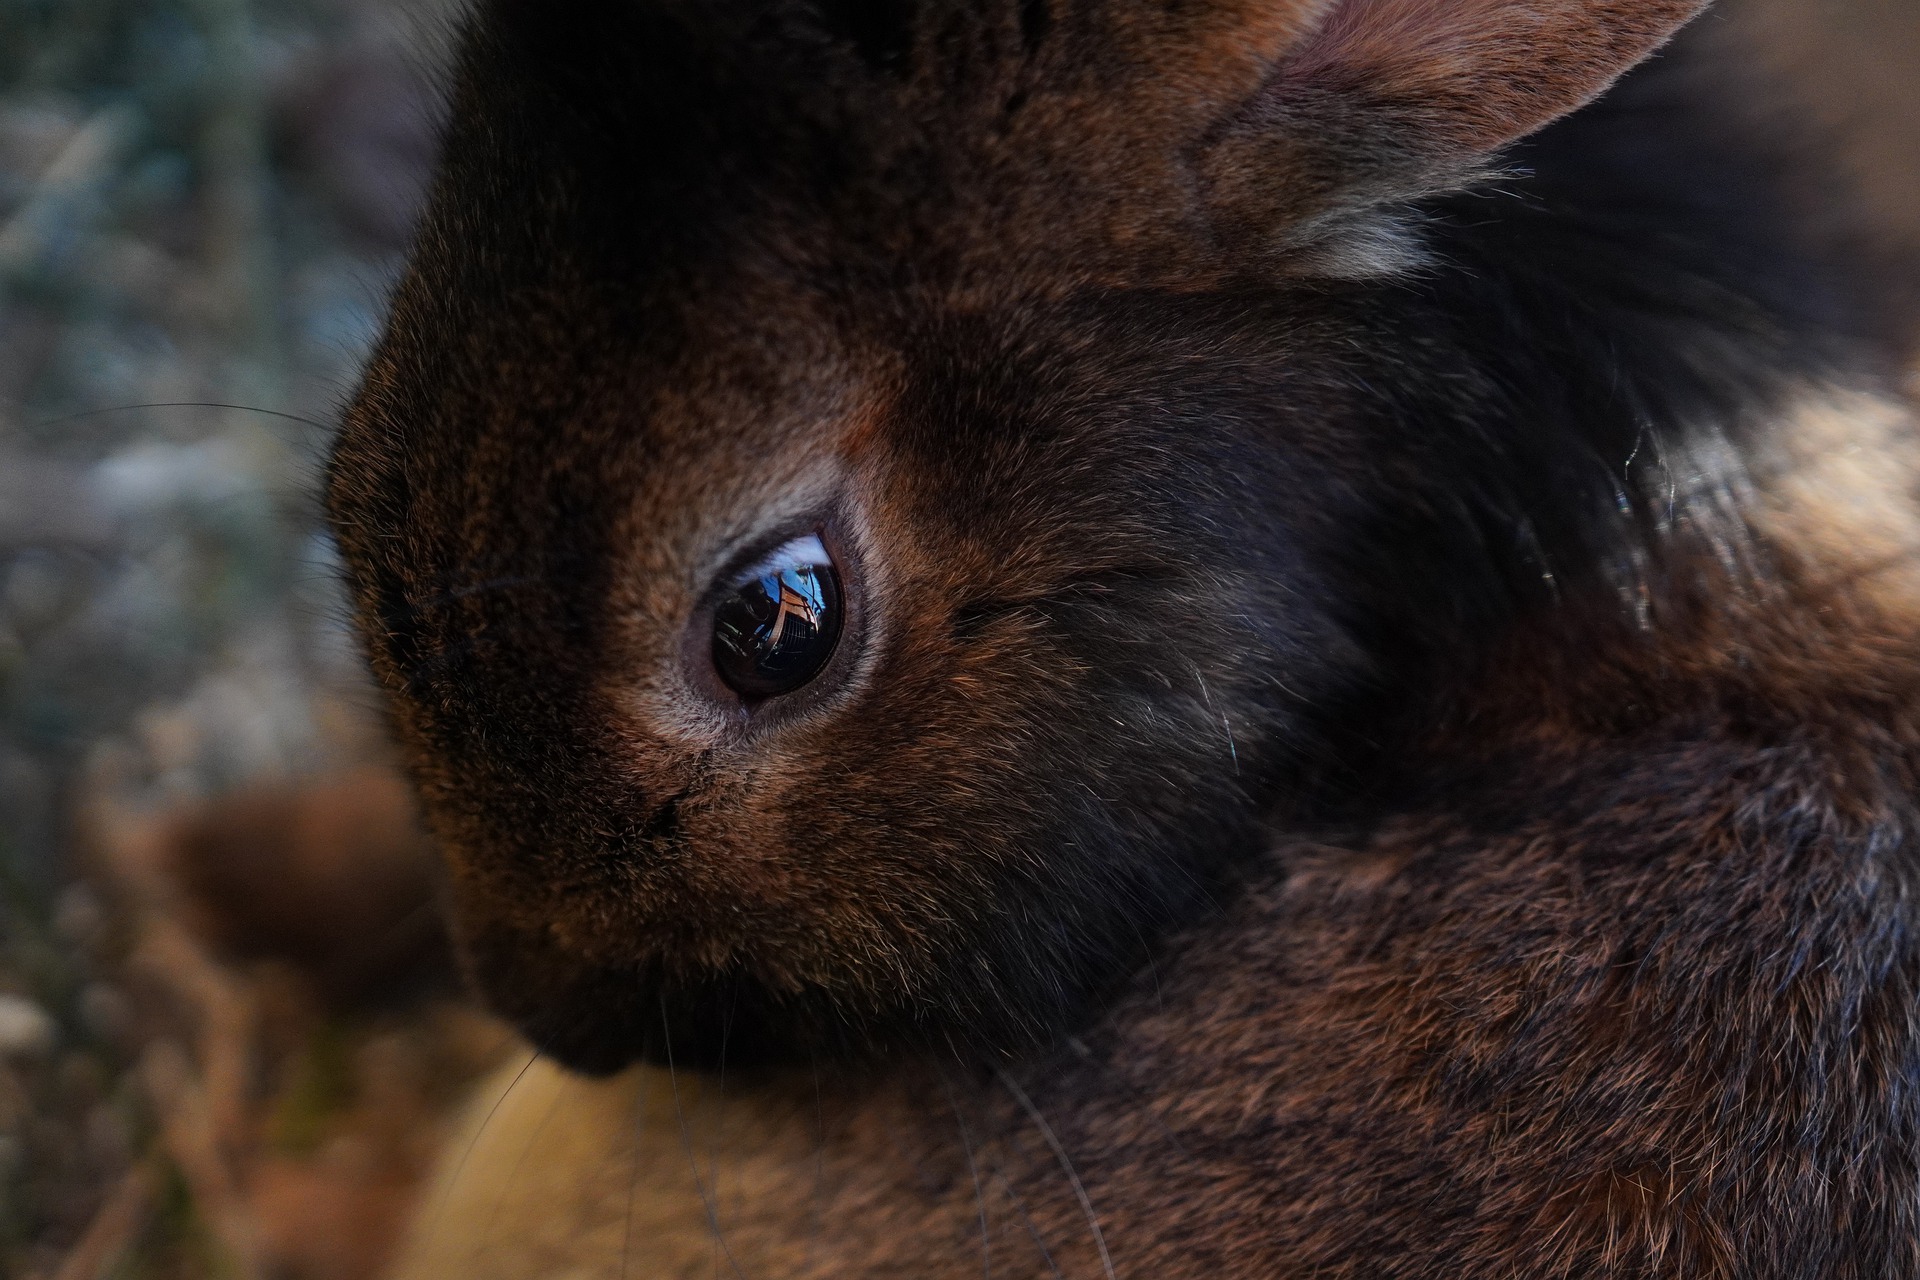 Unhealthy rabbit eyes